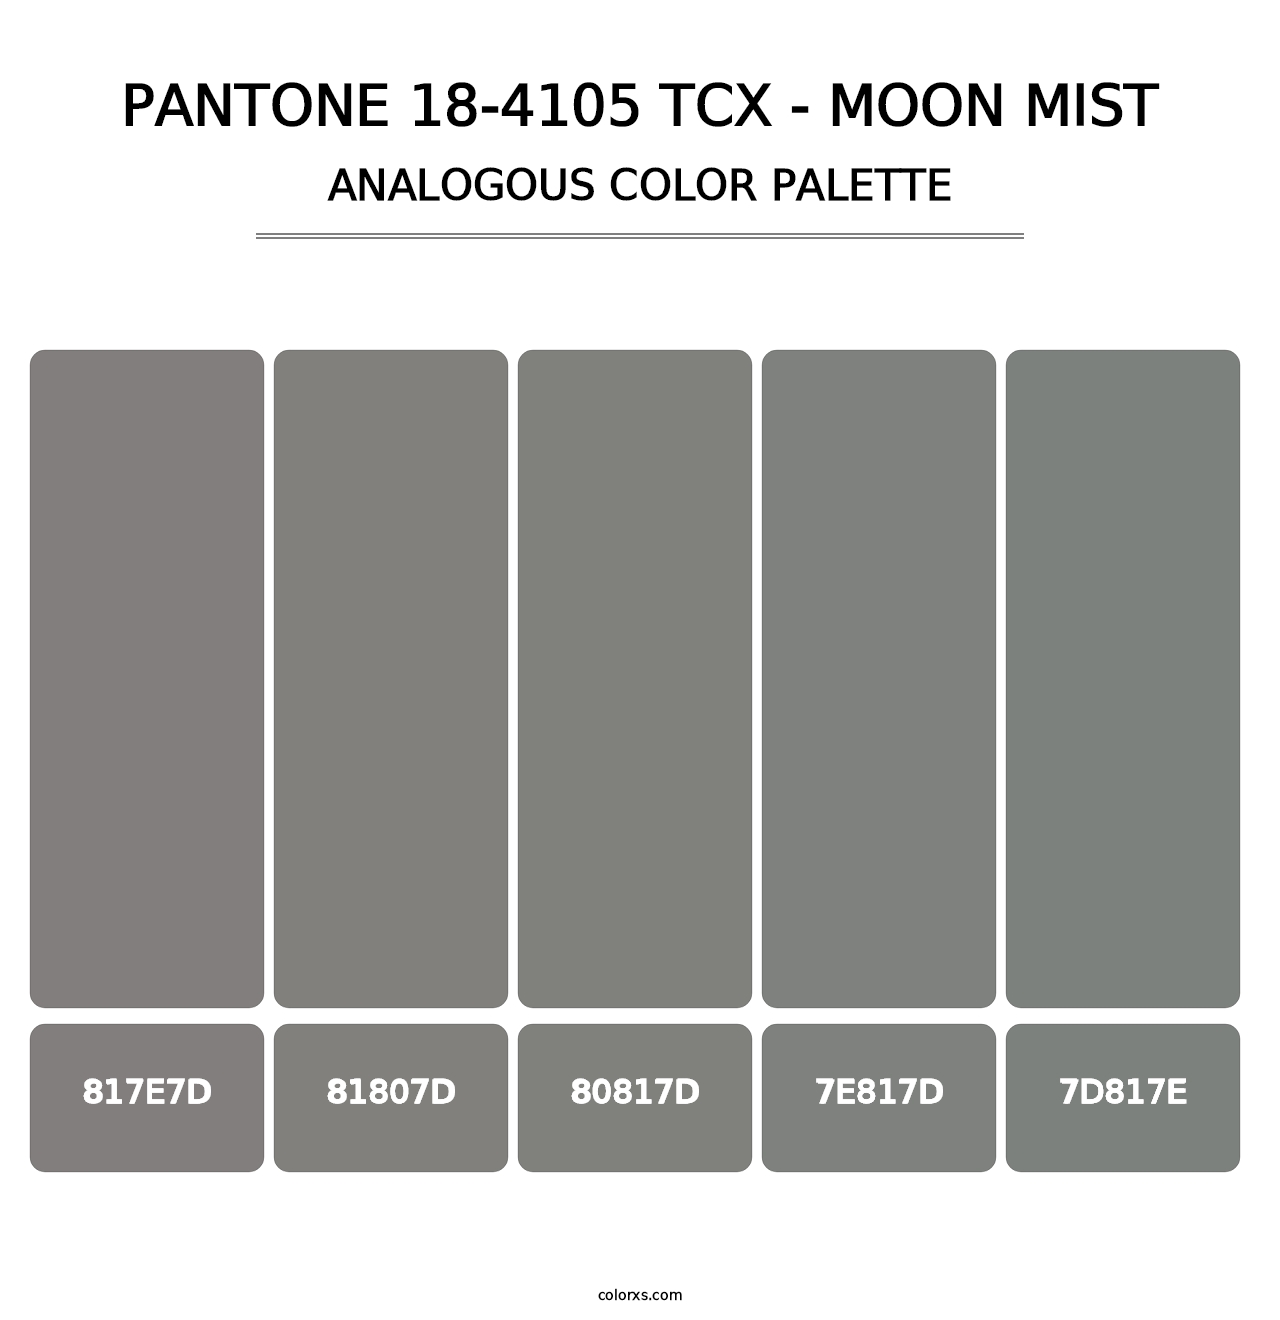 PANTONE 18-4105 TCX - Moon Mist - Analogous Color Palette